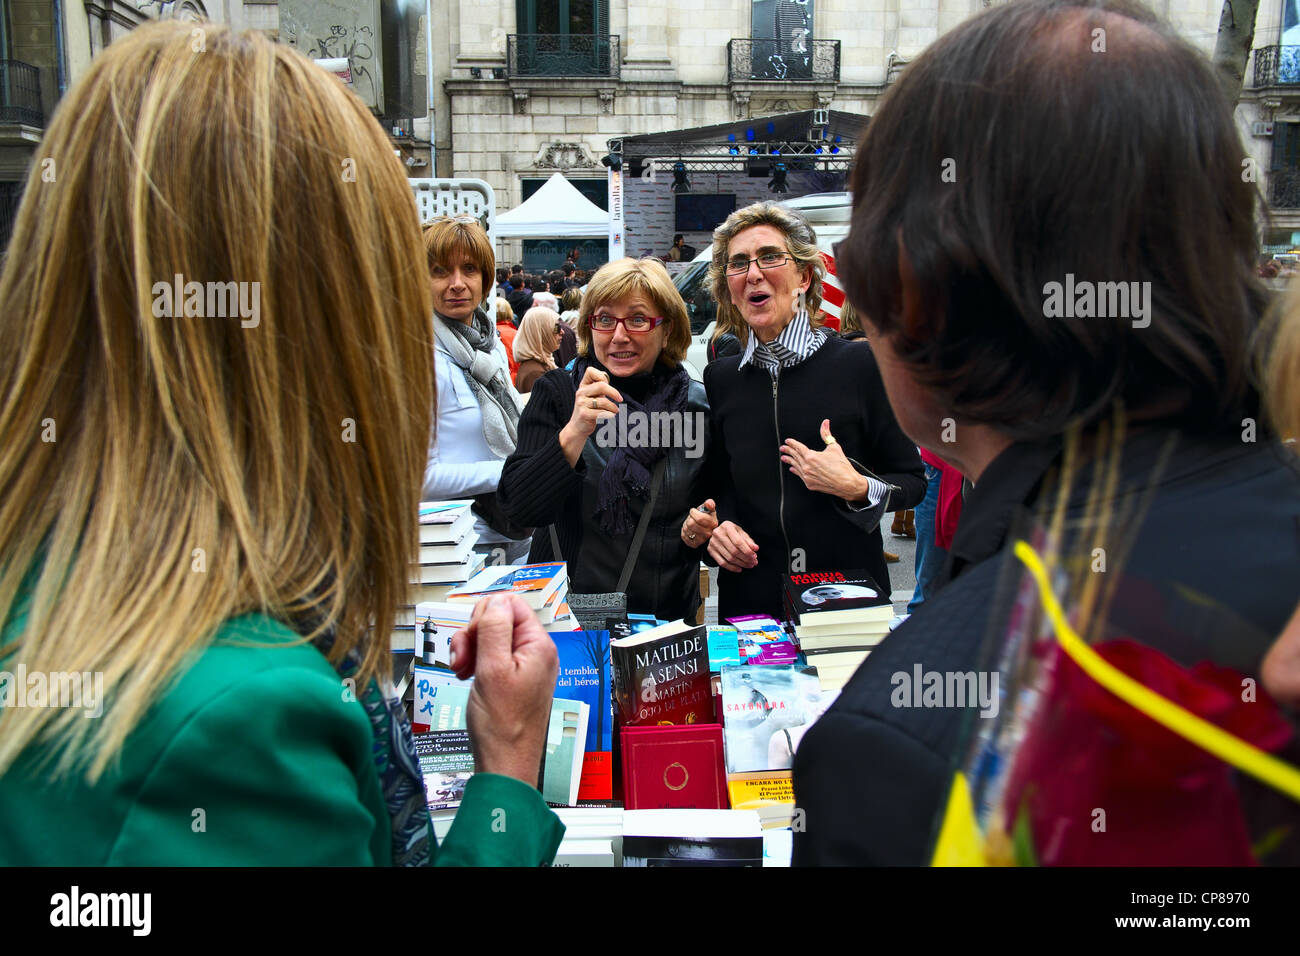 Book stall, vendeurs et les acheteurs sur La Rambla à Barcelone le jour de Saint George, 2012. Banque D'Images